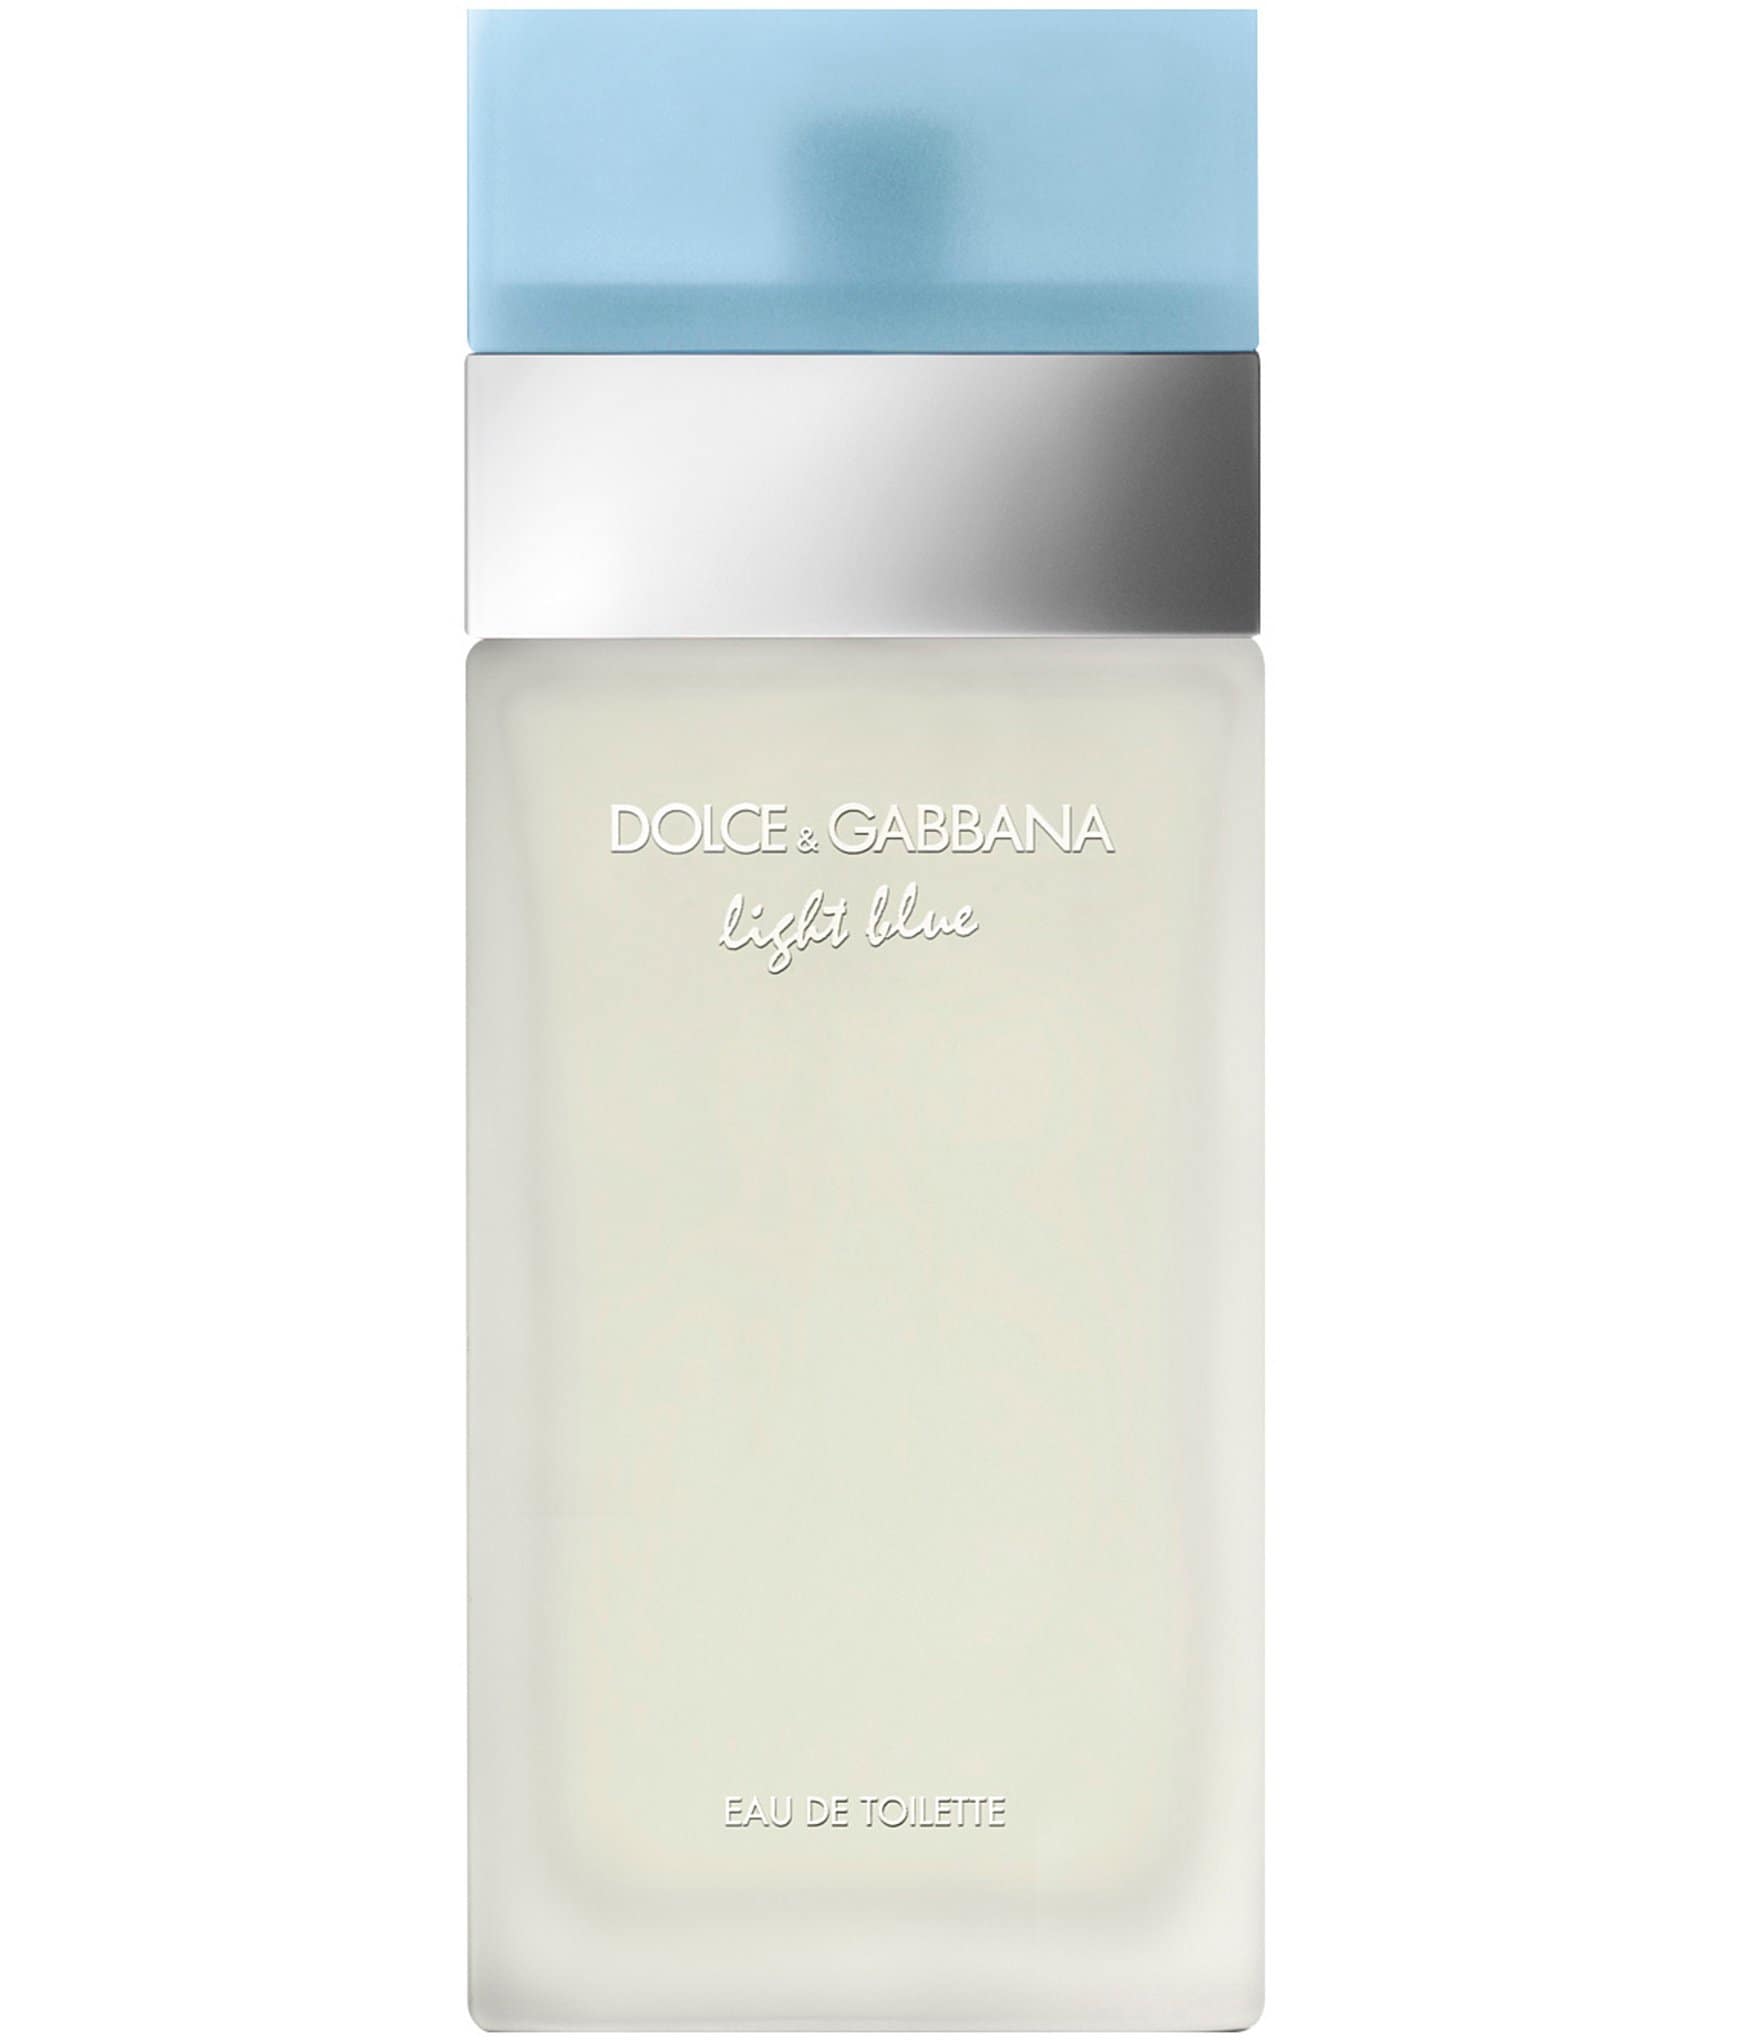 Dolce & Gabbana Light Blue de Spray | Dillard's